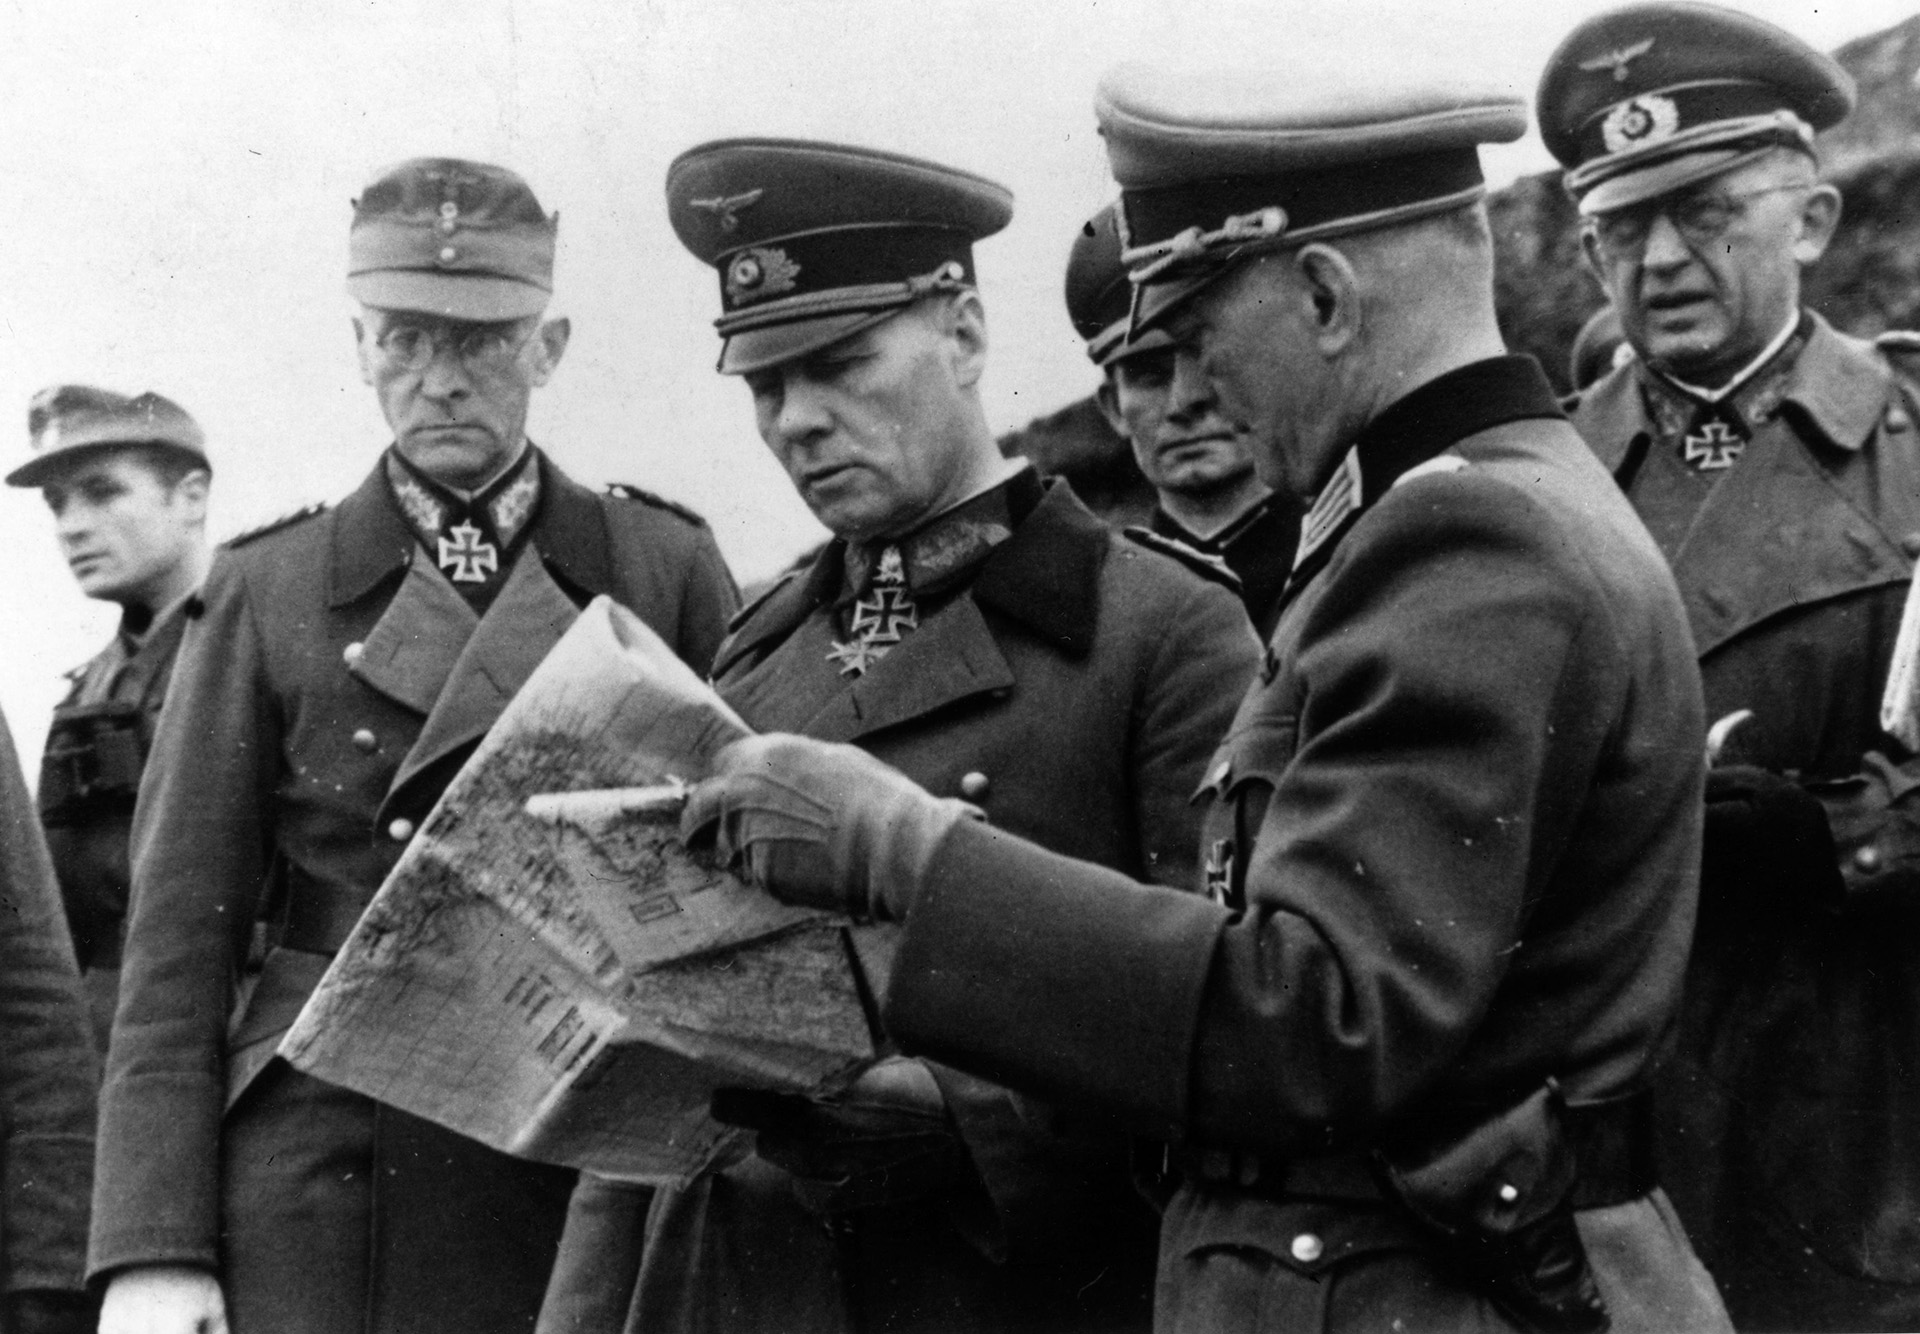 El mariscal de campo Erwin Rommel, en el centro, estudia un mapa junto a otros oficiales alemanes en Caen, Francia, durante una inspección a las defensas costeras (Photo by Keystone/Getty Images)